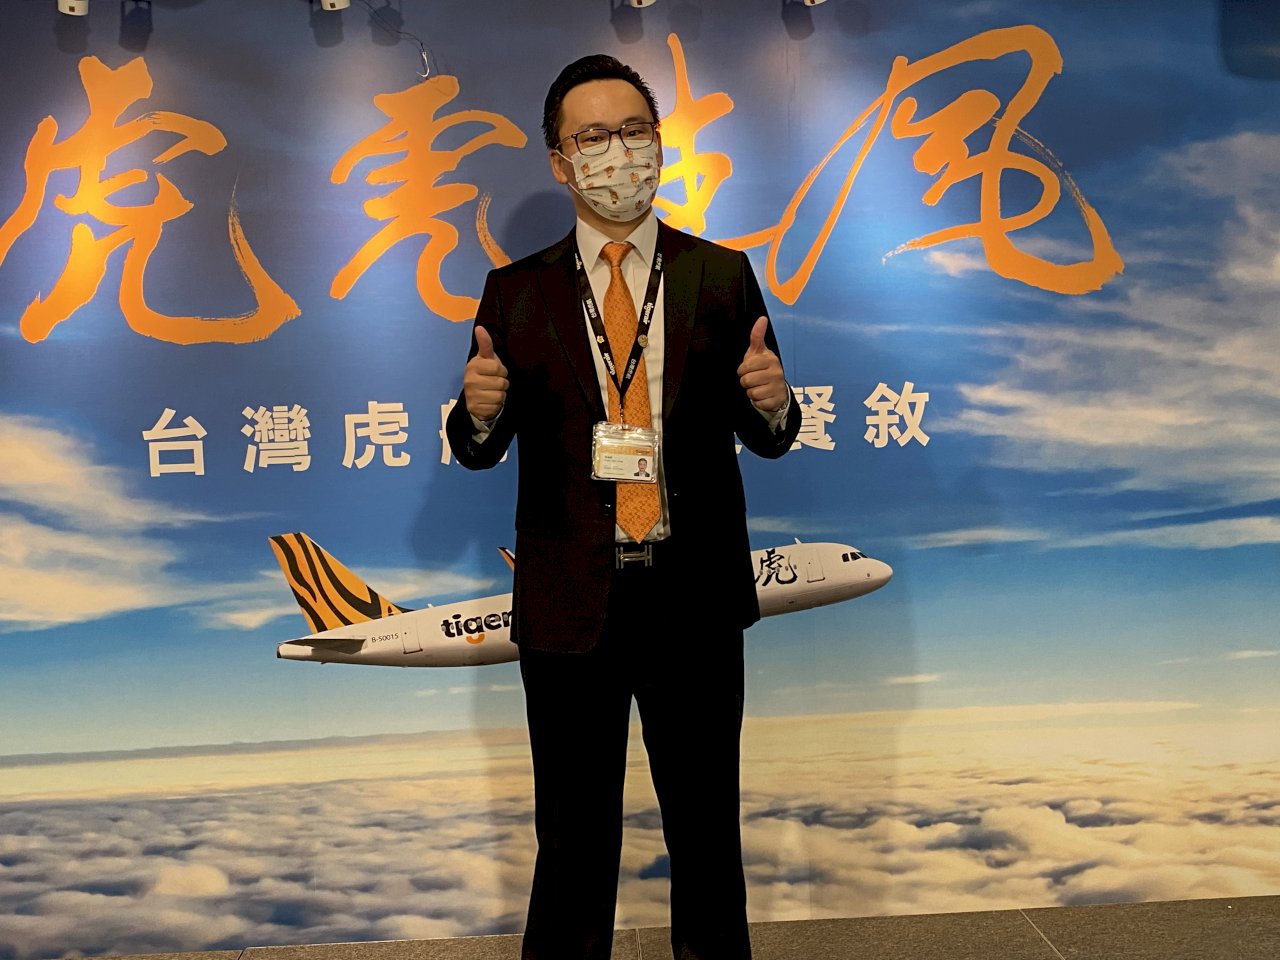 不懼疫情、台灣虎航持續交付新機 2027年全新15架A320neo機隊成軍